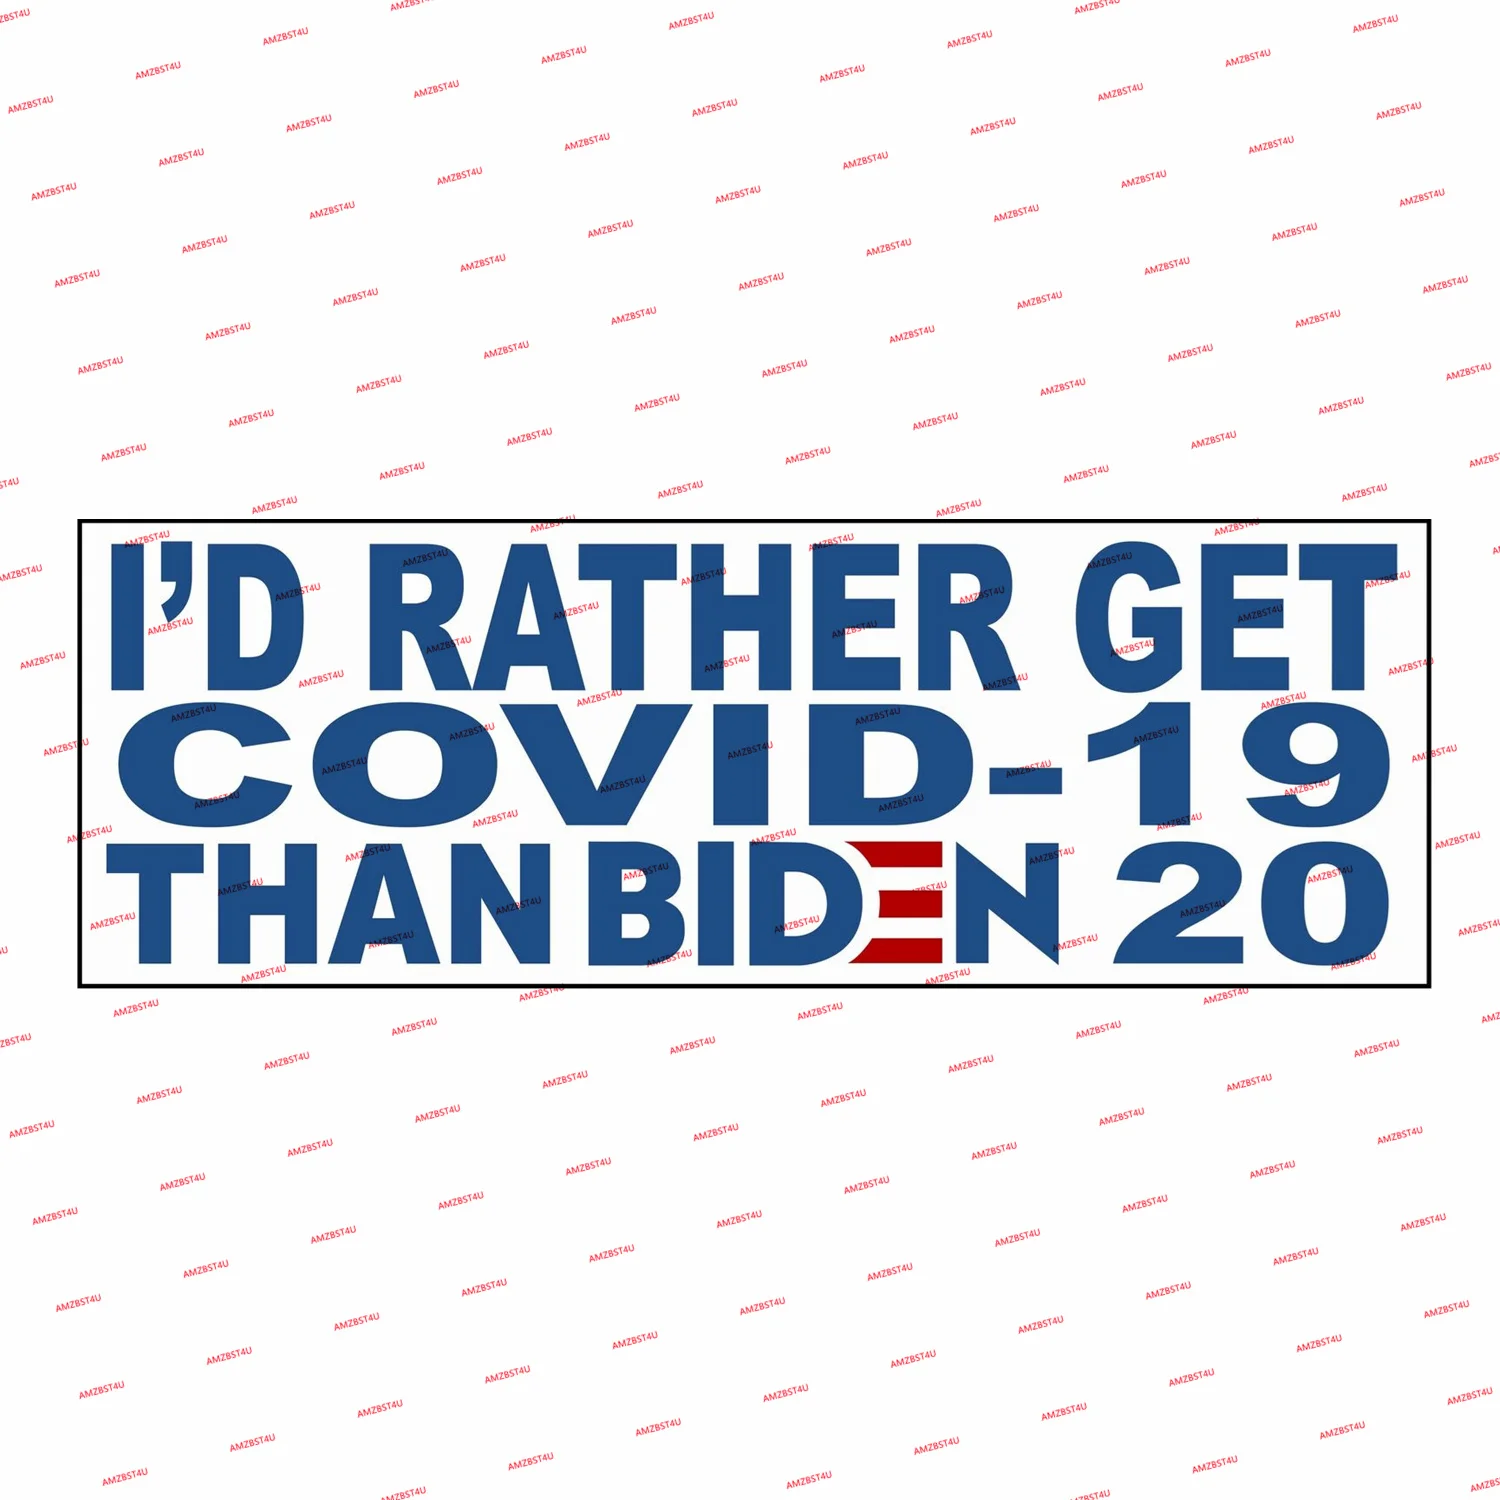 

Наклейки для автомобиля, скорее, Джек Трамп 2024, скорее всего получить Cov * d 19, чем Biden 2020, это отражающие наклейки Брендона, были ли сдвоенные, о...